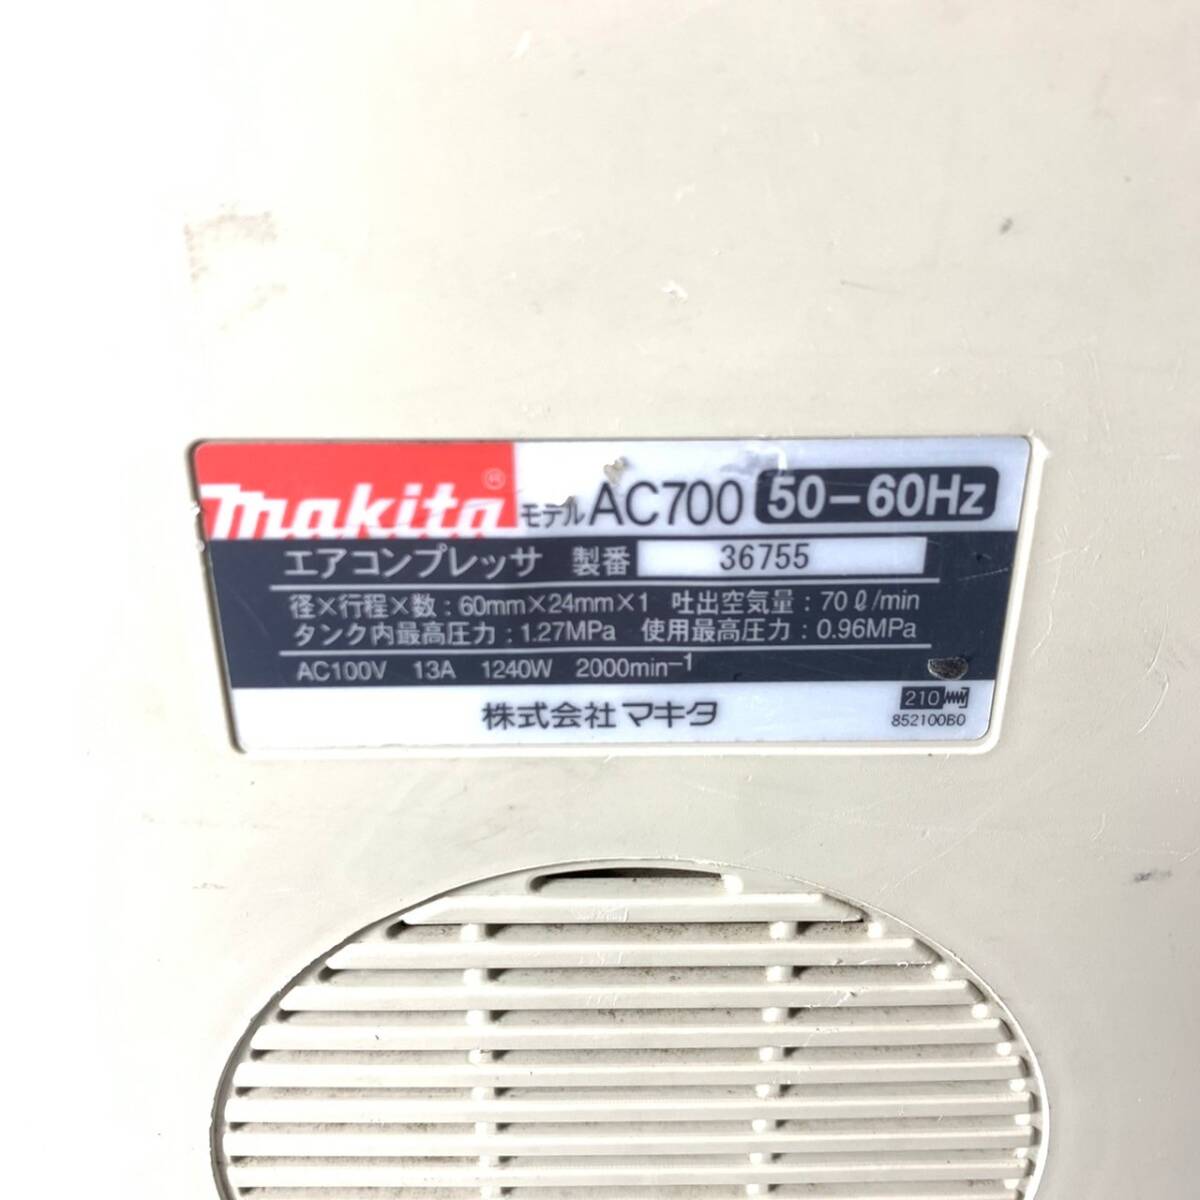 *[ анимация есть ] makita Makita воздушный компрессор в общем давление 5L AC700 полный заполнение примерно 48 секунд 100V. давление работа OK квитанция о получении / Shizuoka прямой .OK k0327-5-2b